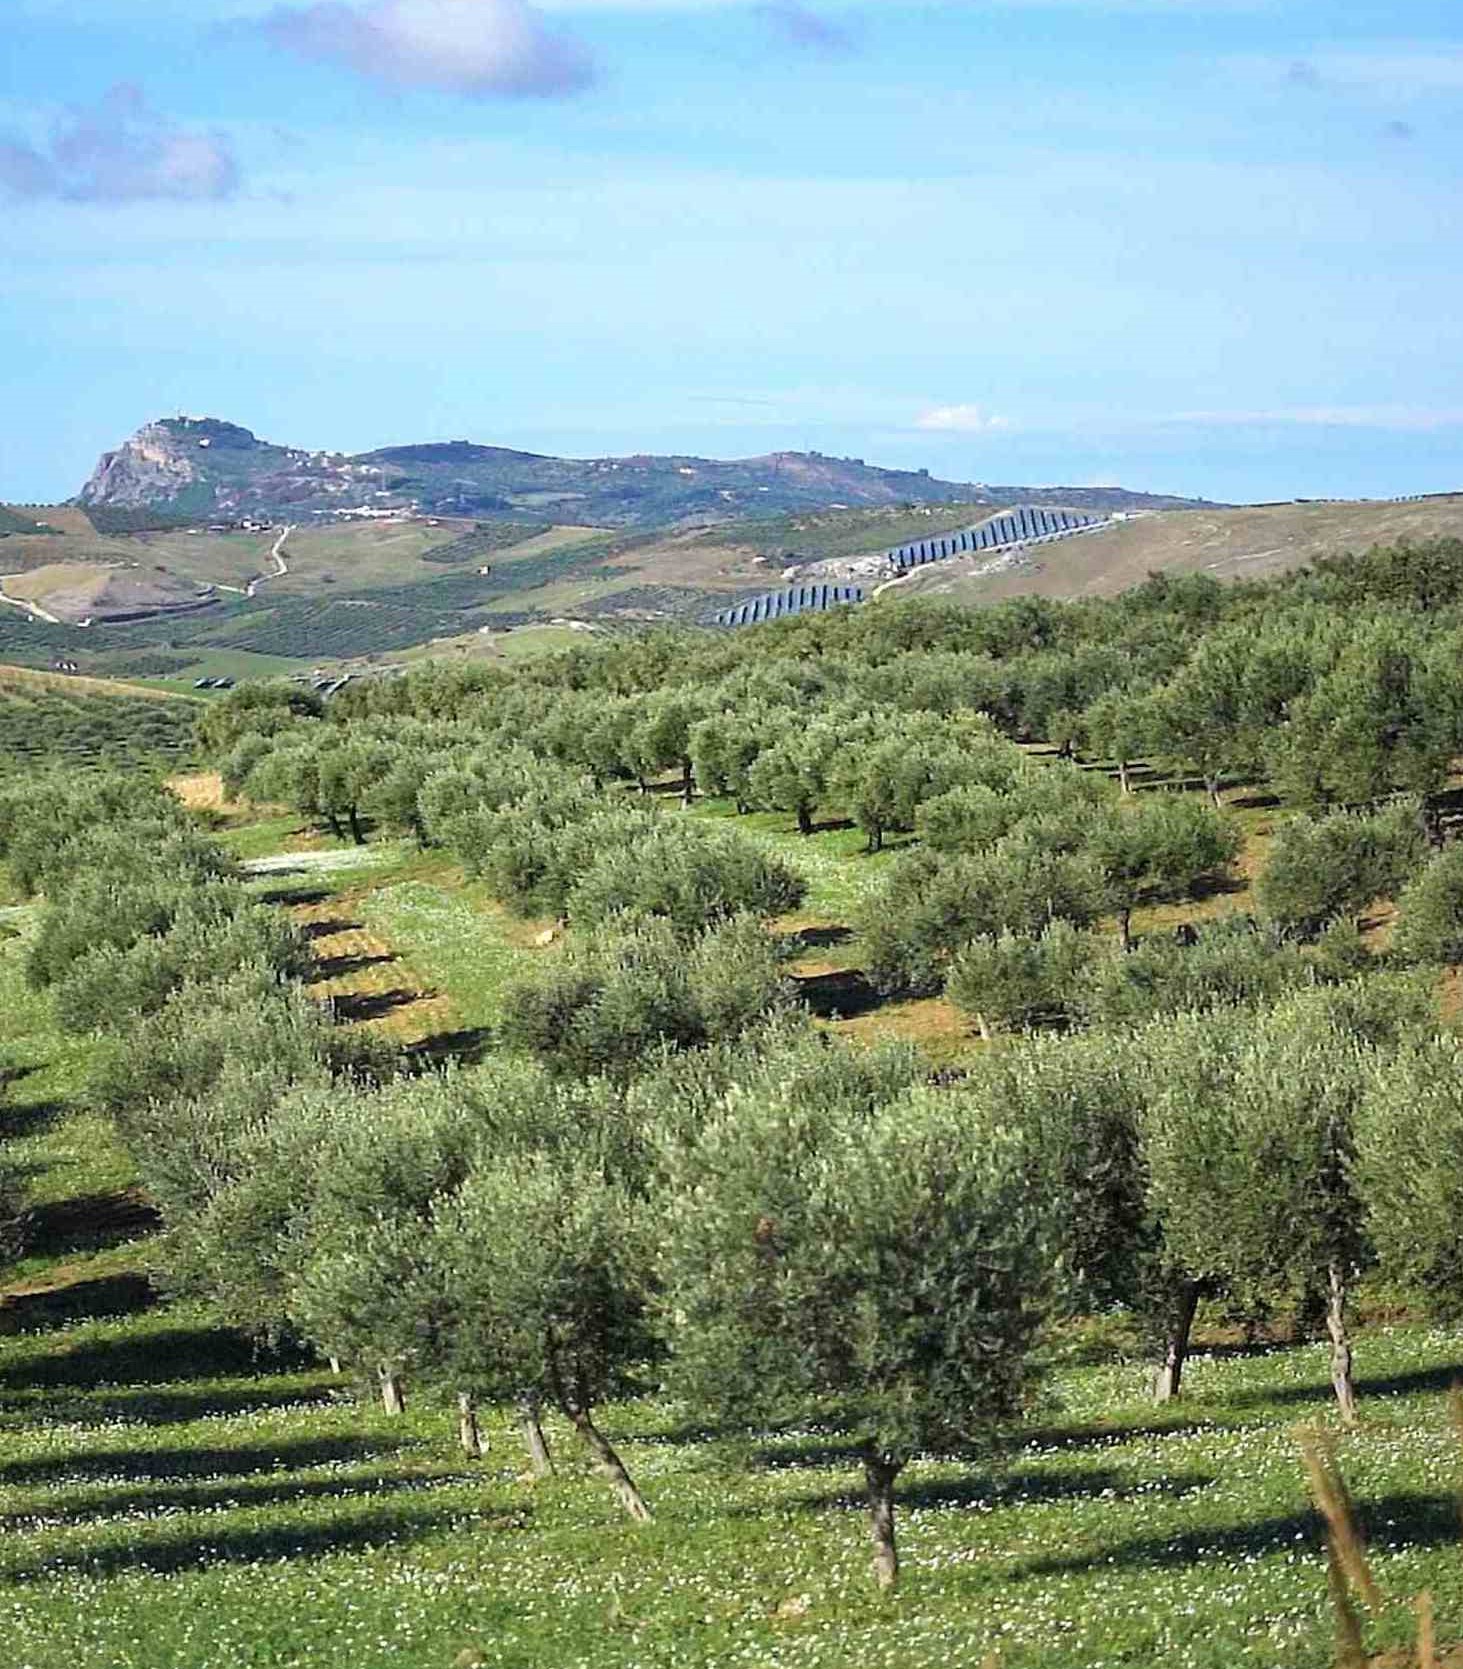 Les oliviers de notre producteur qui poussent sous un beau soleil de Sicile... OKLM